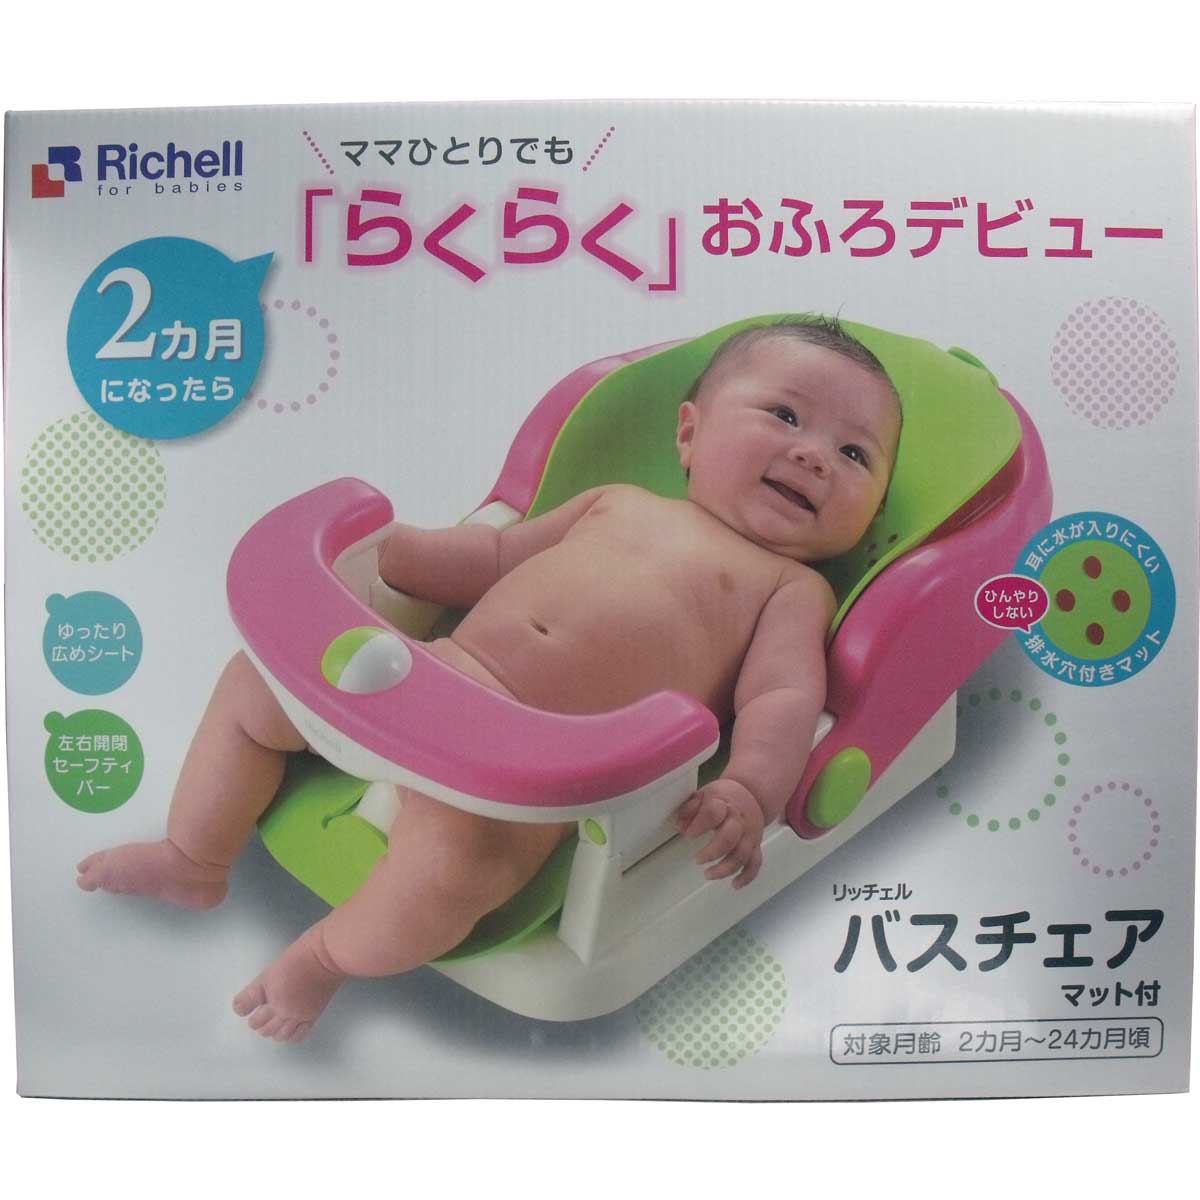 コレクション 赤ちゃん お風呂 マット 西松屋 161283赤ちゃん お風呂 マット 西松屋